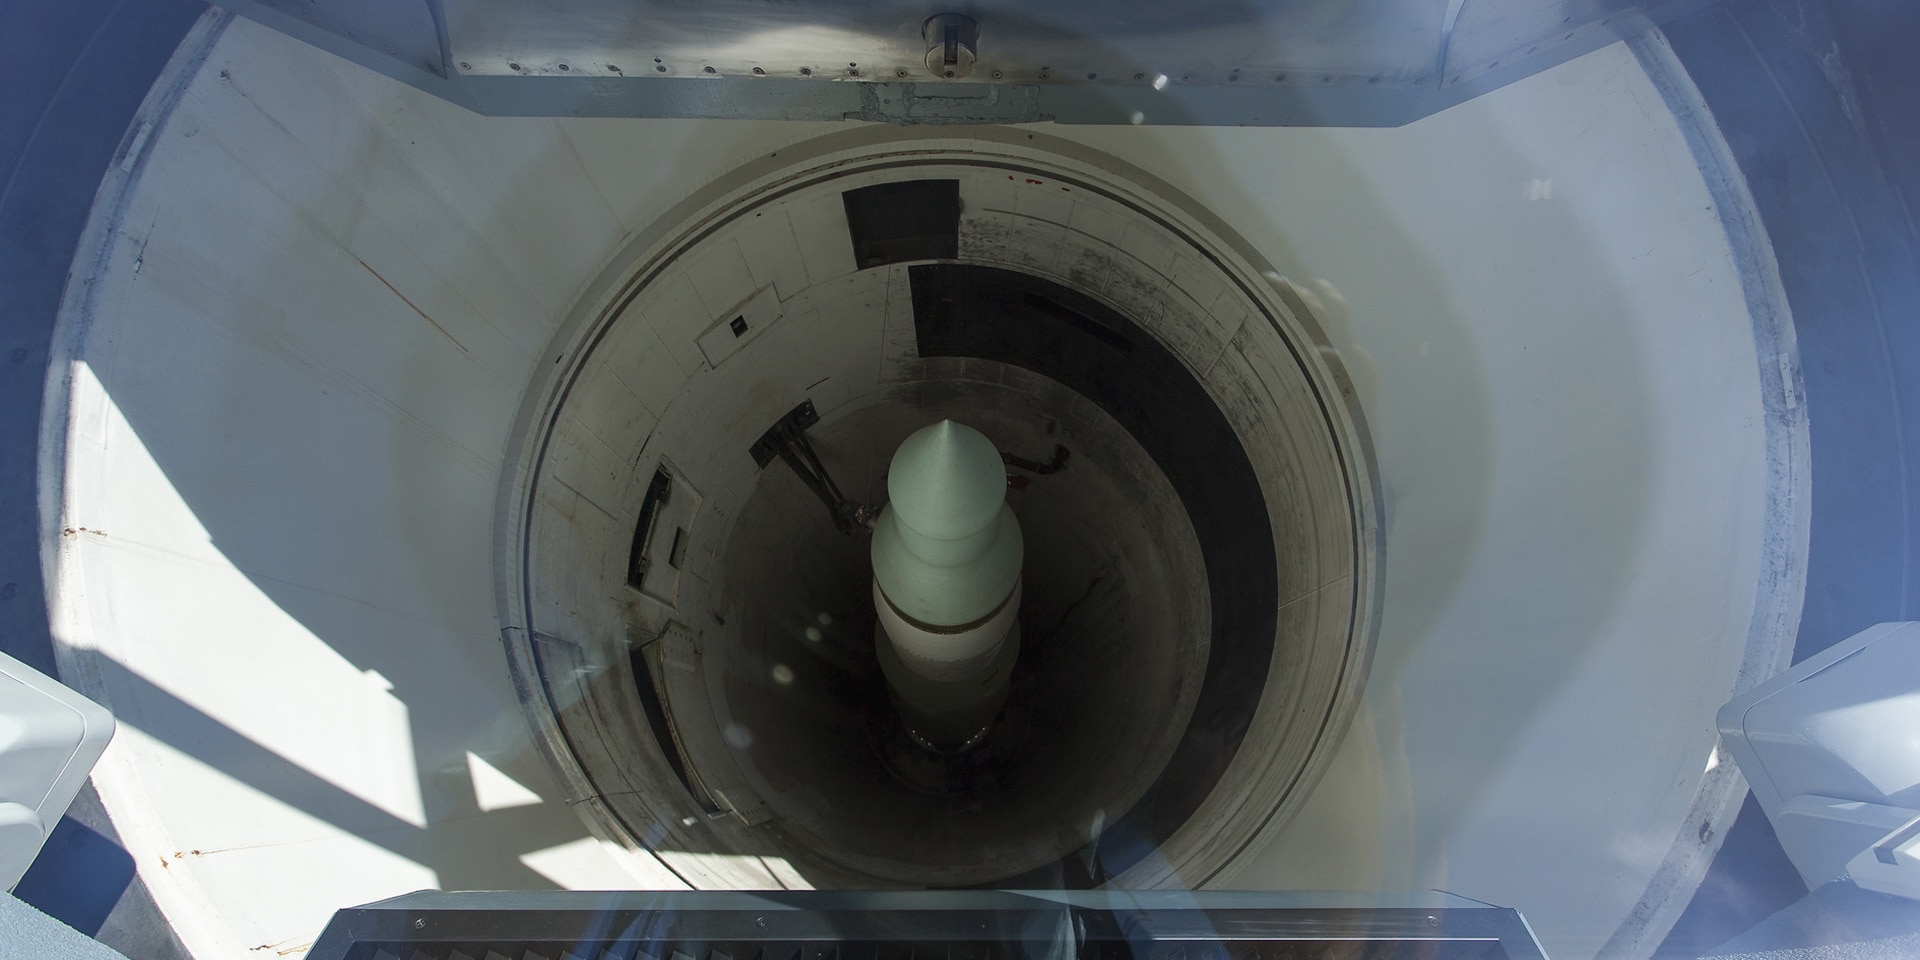  Image d’un missile, appartenant à la catégorie des armes nucléaires